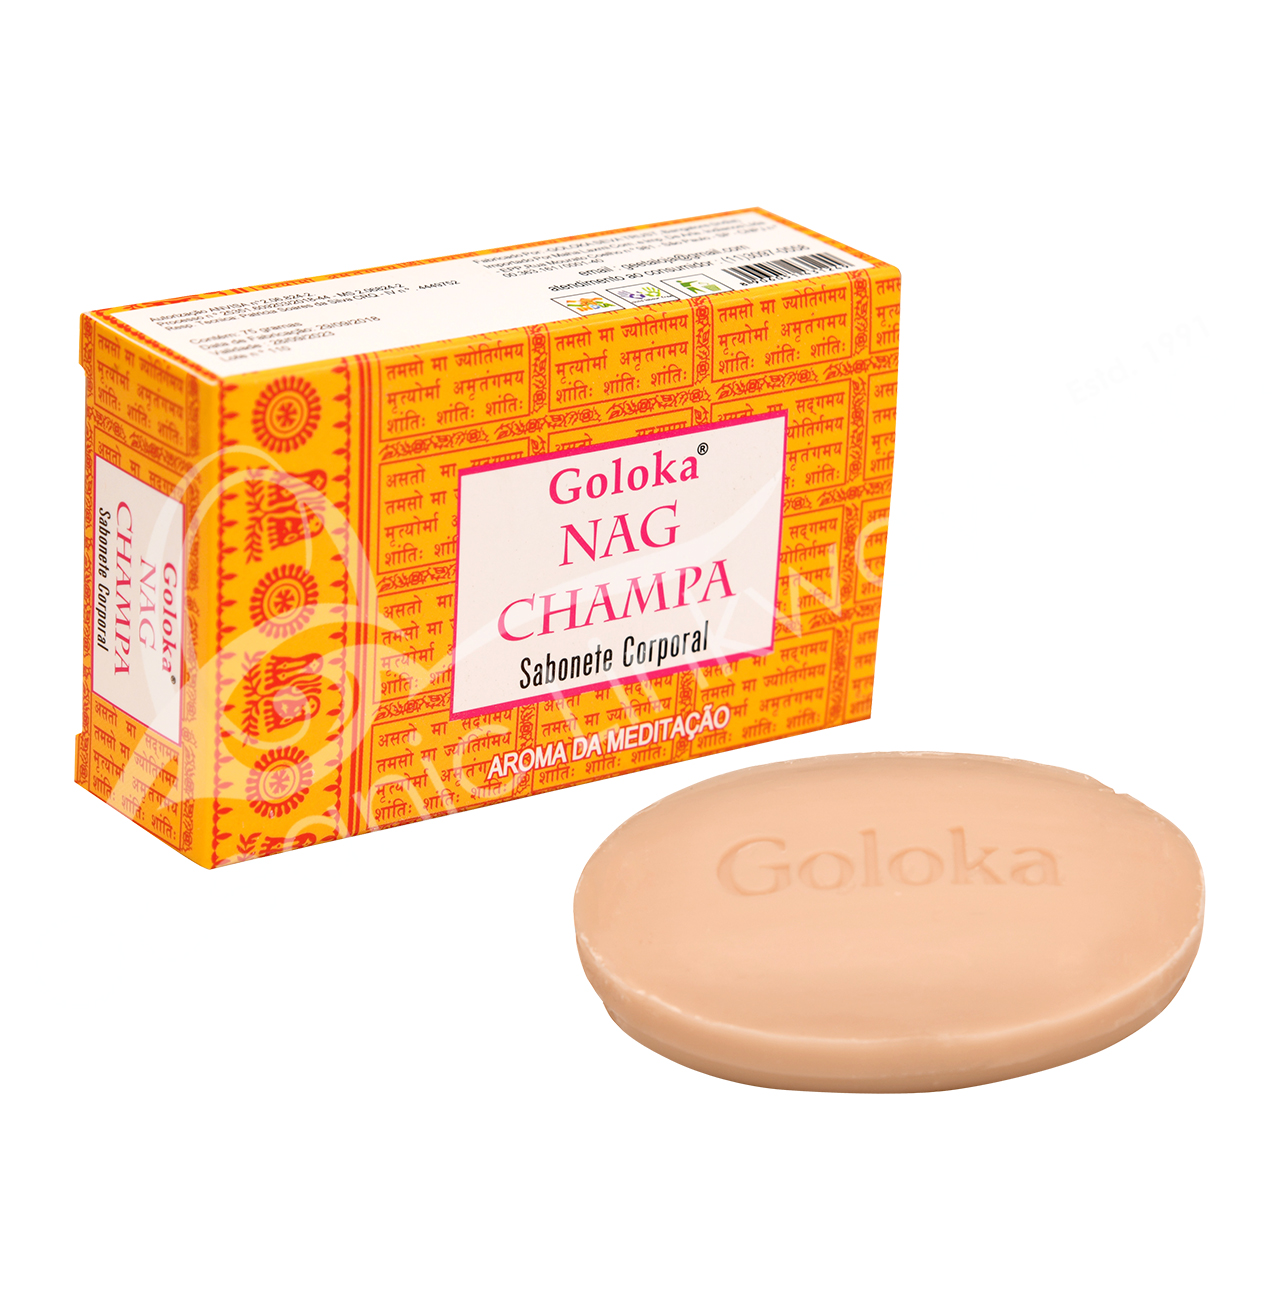  Wholesale Nag Champa Soap 75 grams